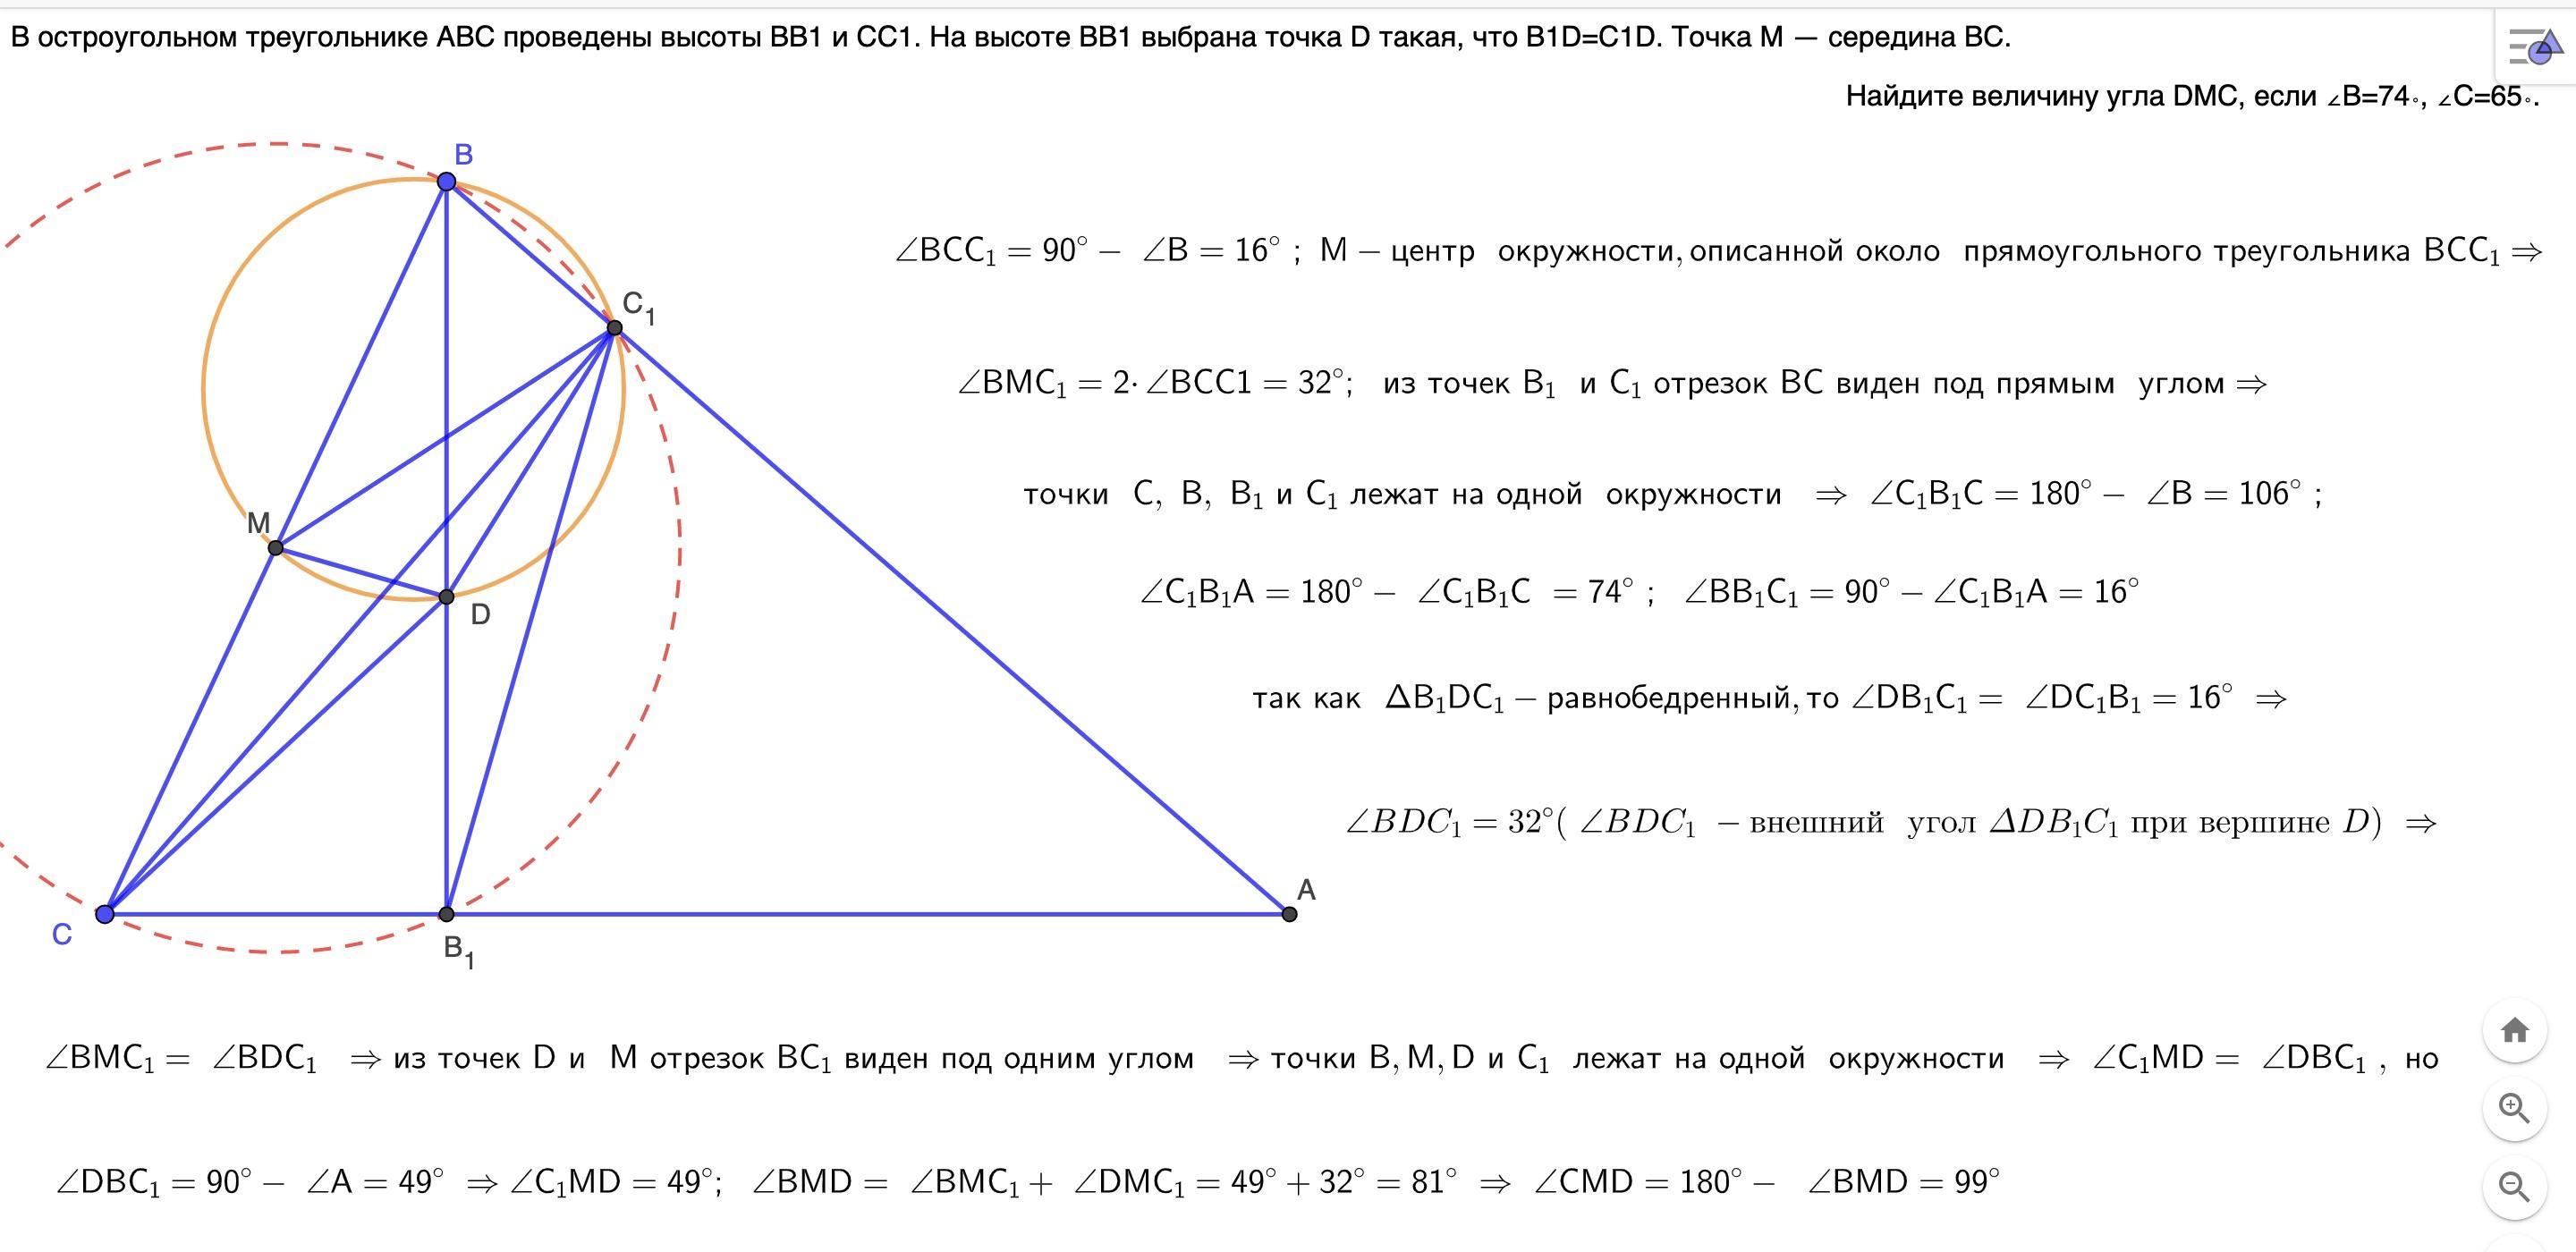 В остроугольном треугольнике есть прямой угол. Остроугольный треугольник АВС. В остроугольном треугольнике АВС проведены. Высоты bb1 и cc1 остроугольного треугольника. Пересечение высот в остроугольном треугольнике.